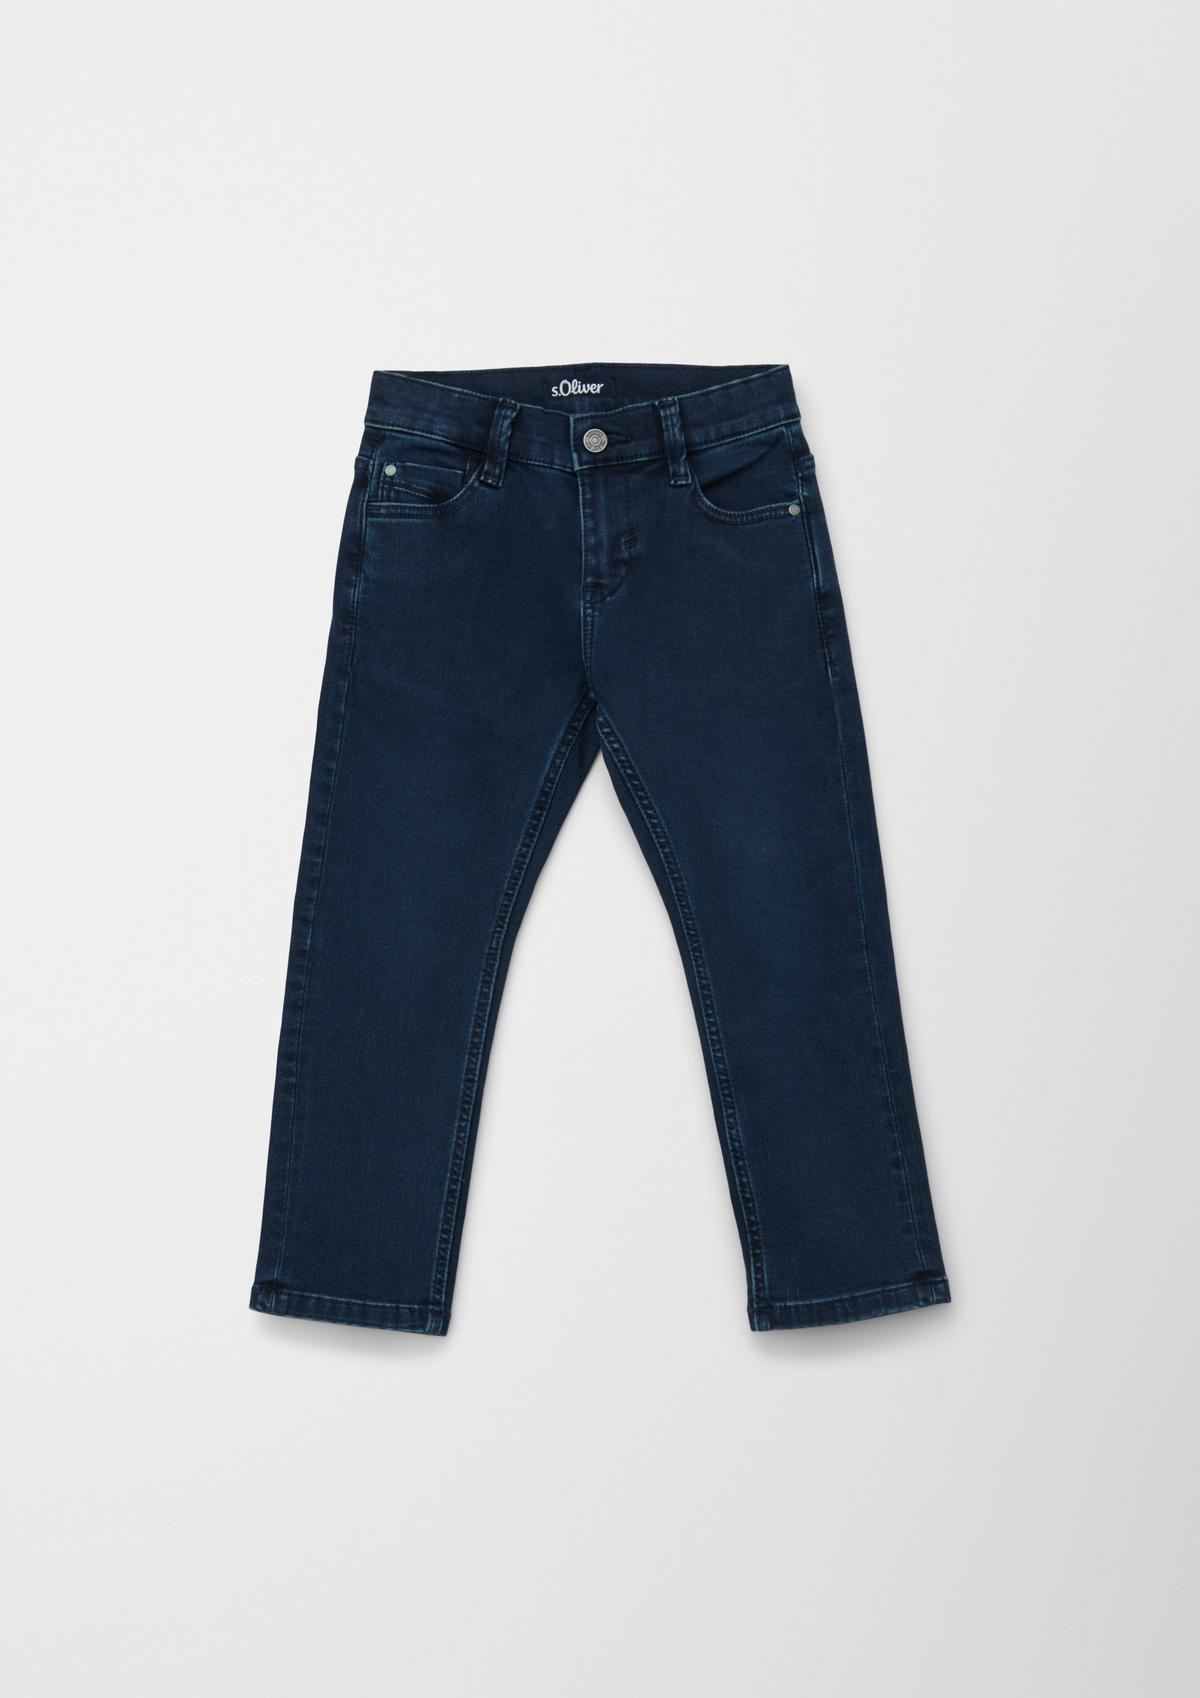 s.Oliver Pelle jeans / regular fit / mid rise / straight leg